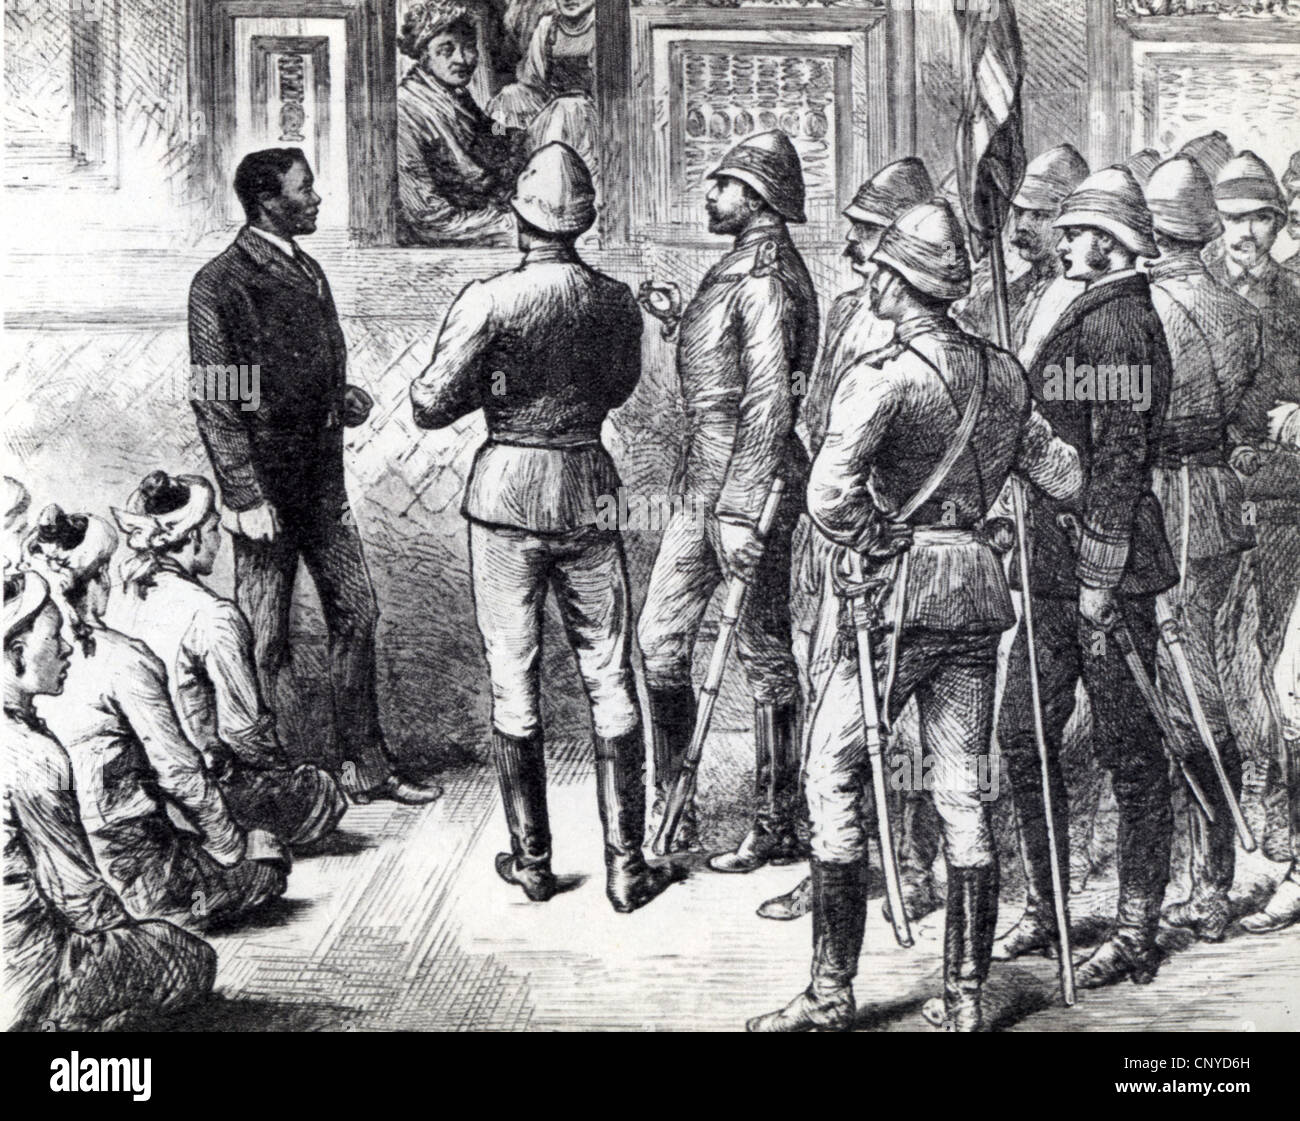 BURMA englischen Offiziere mit König Thebaw von Upper Burma am Fenster als Großbritannien sein Territorium im Jahre 1885 annektiert. Übersetzer auf der linken Seite Stockfoto